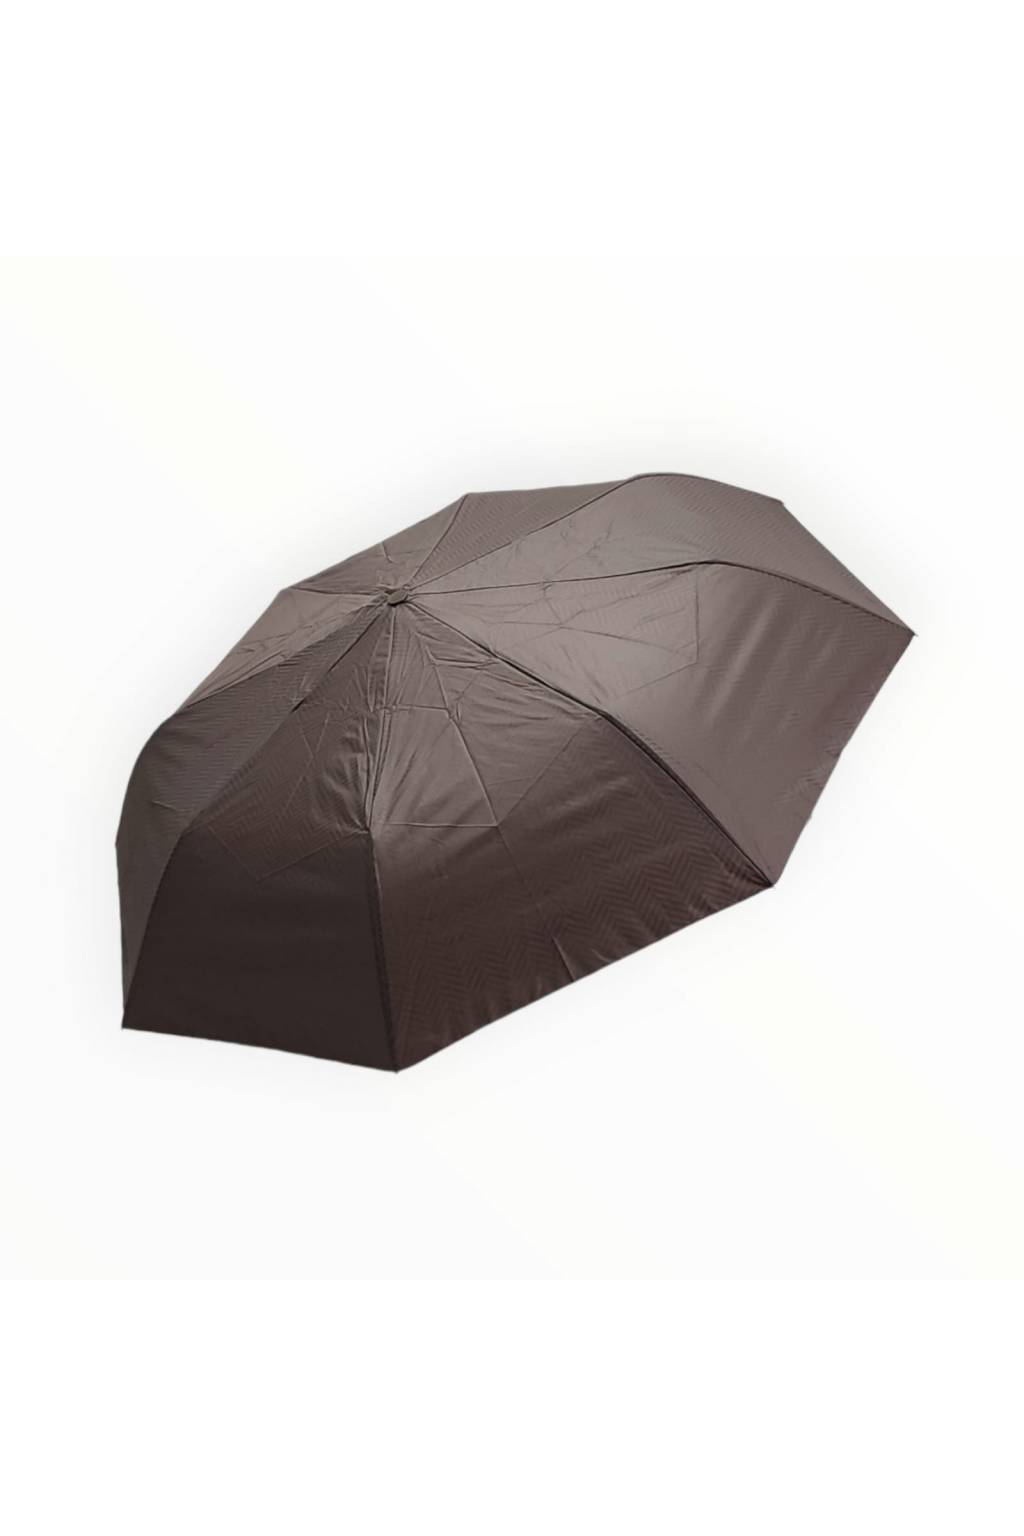 Vetruodolný dáždnik ZEBRA tmavohnedý www.kabelky vypredaj (8)